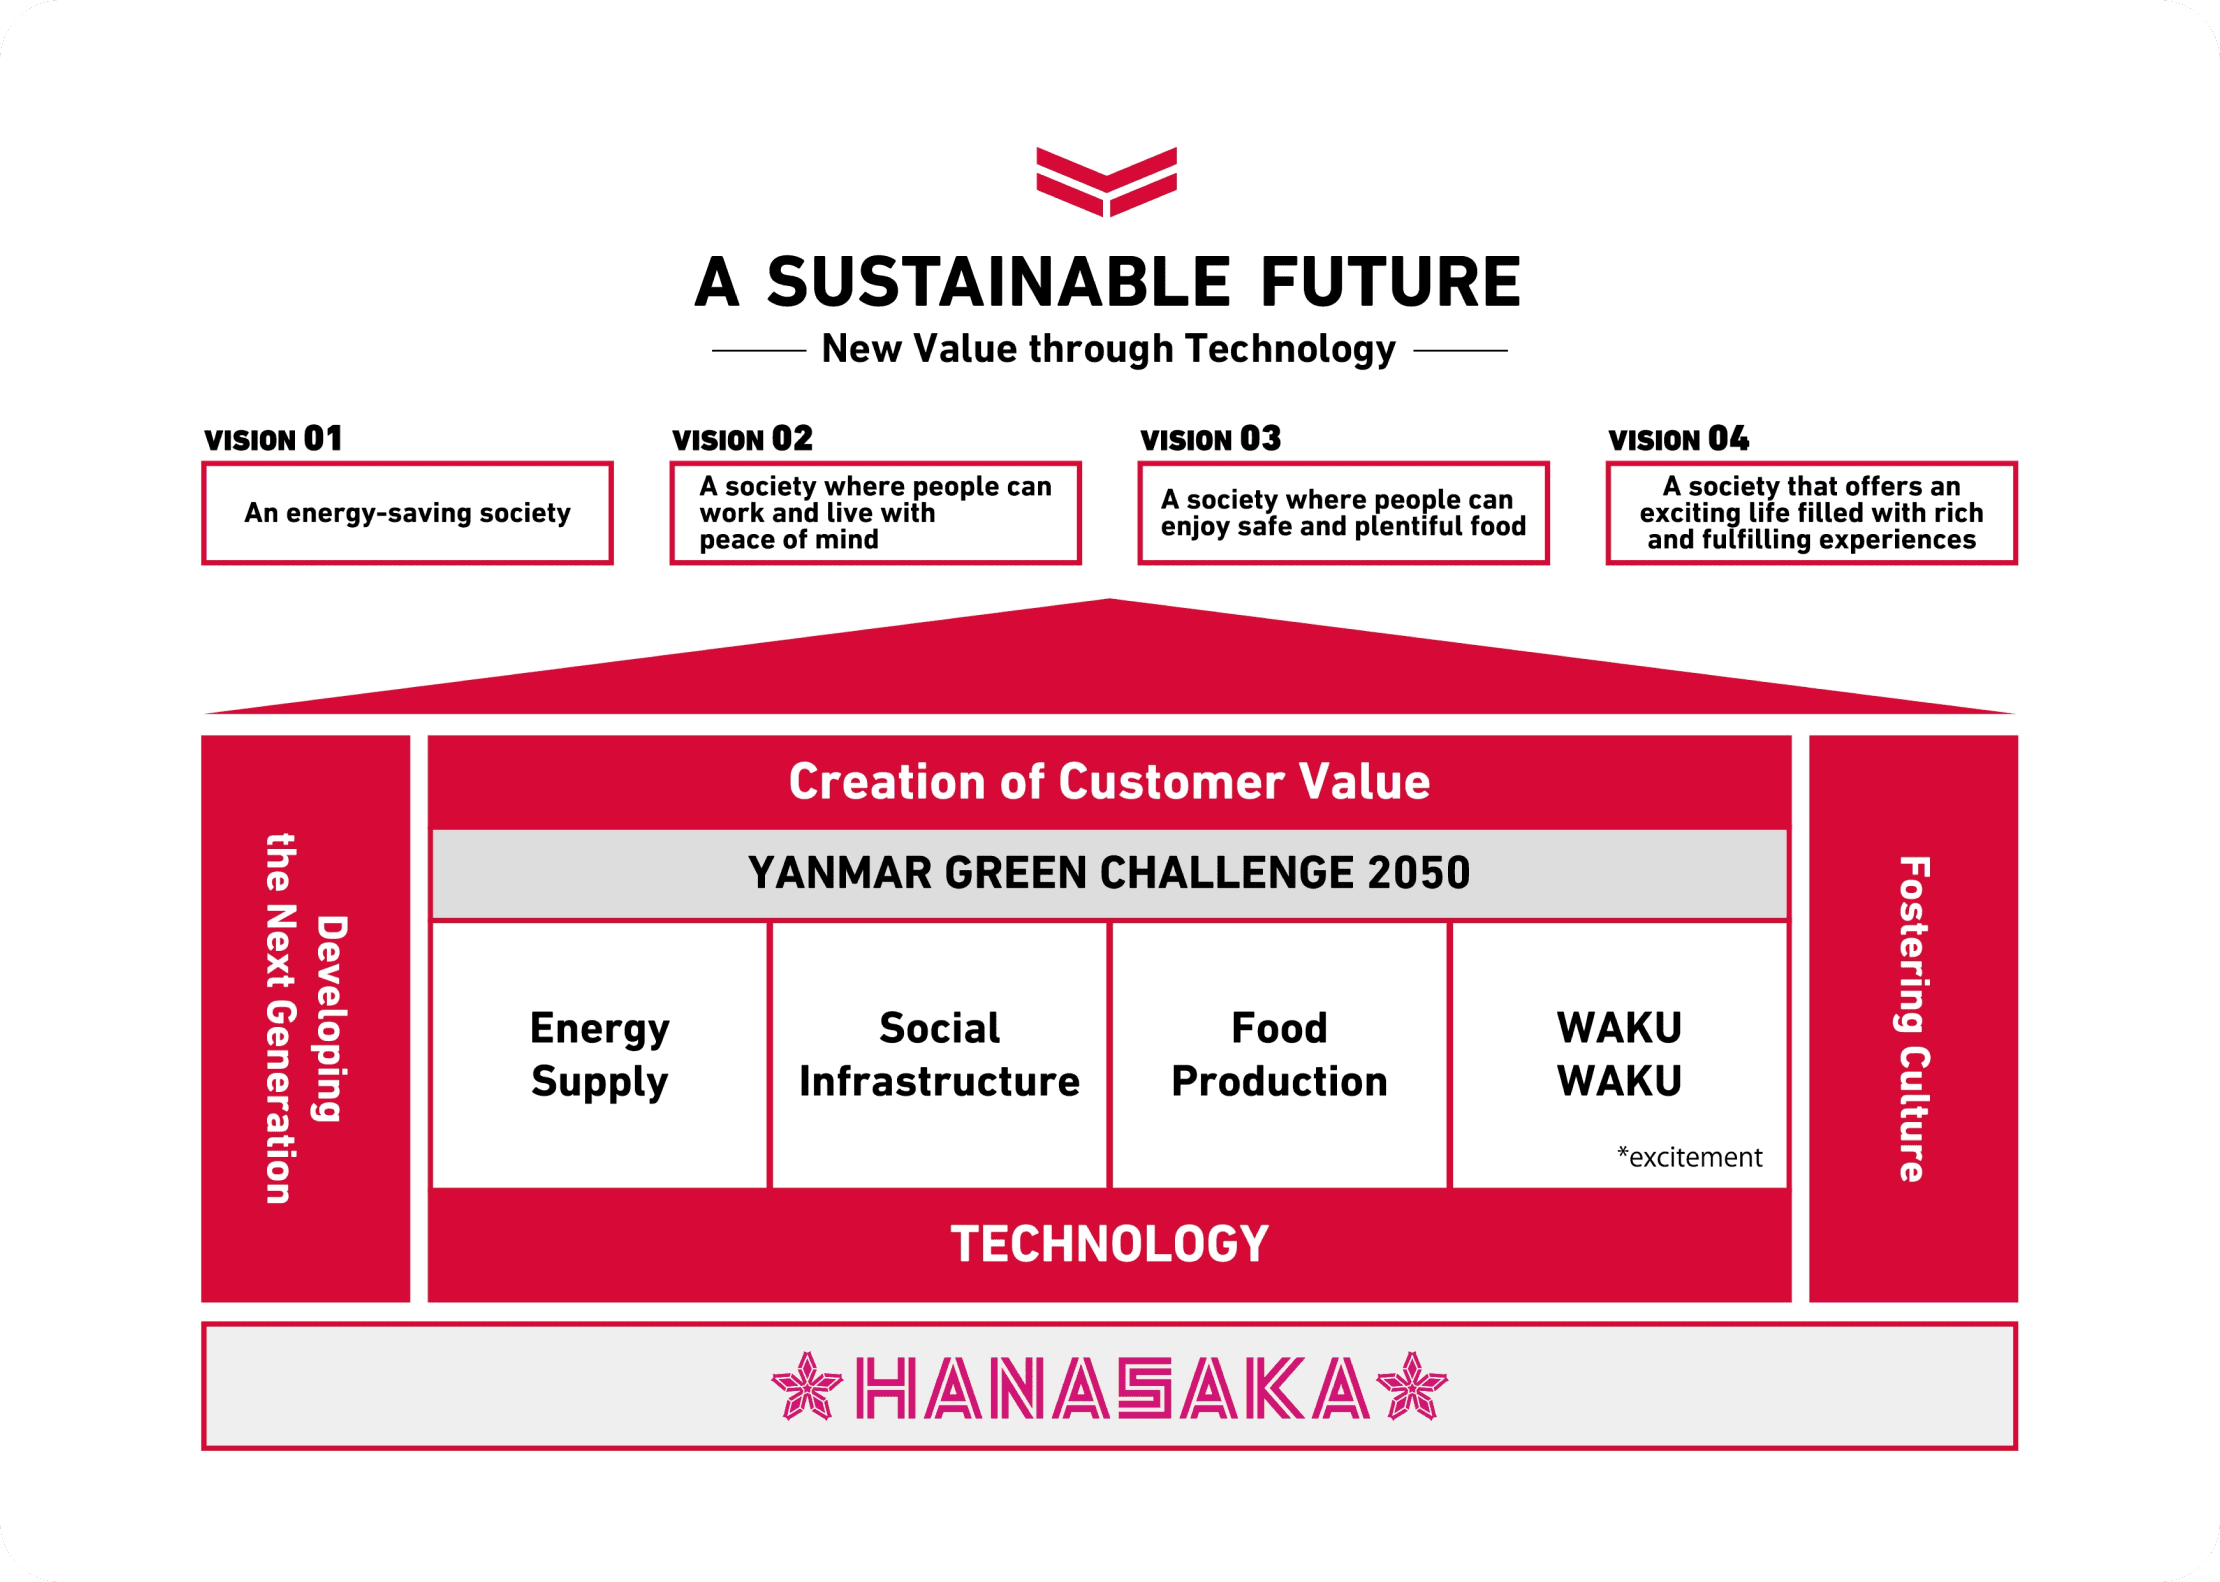 Das Diagramm zeigt die einzelnen Geschäftsaktivitäten der vier Gesellschaften in „FUTURE VISION“ und A SUSTAINABLE FUTURE die nacheinander auf dem Fundament von HANASAKA aufgebaut wurden.